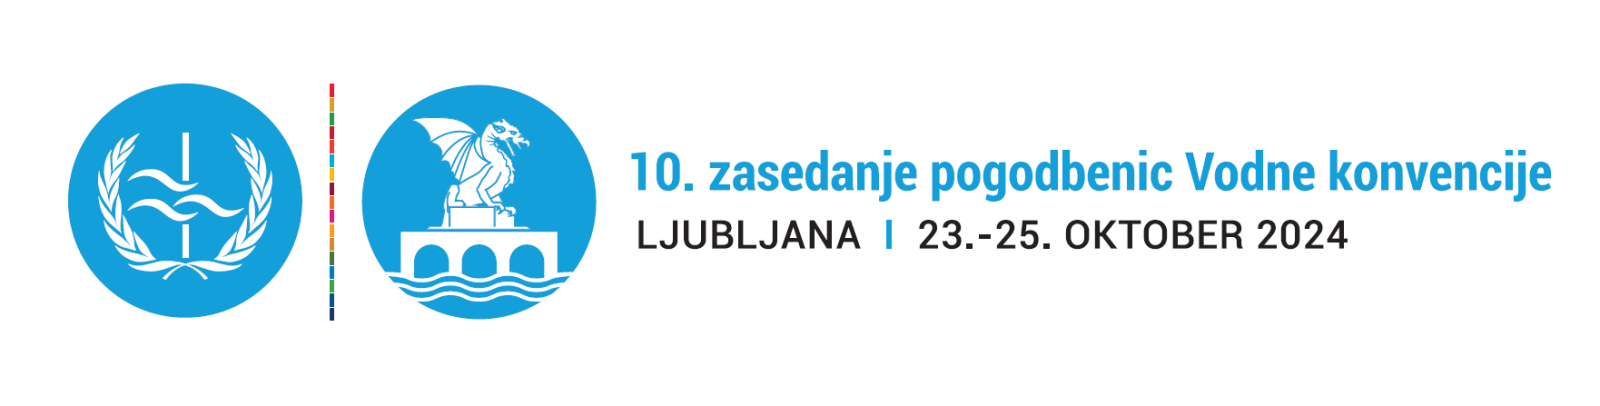 10. zasedanje pogodbenic Vodne konvencije, Ljubljana, 23. - 25. oktober 2024